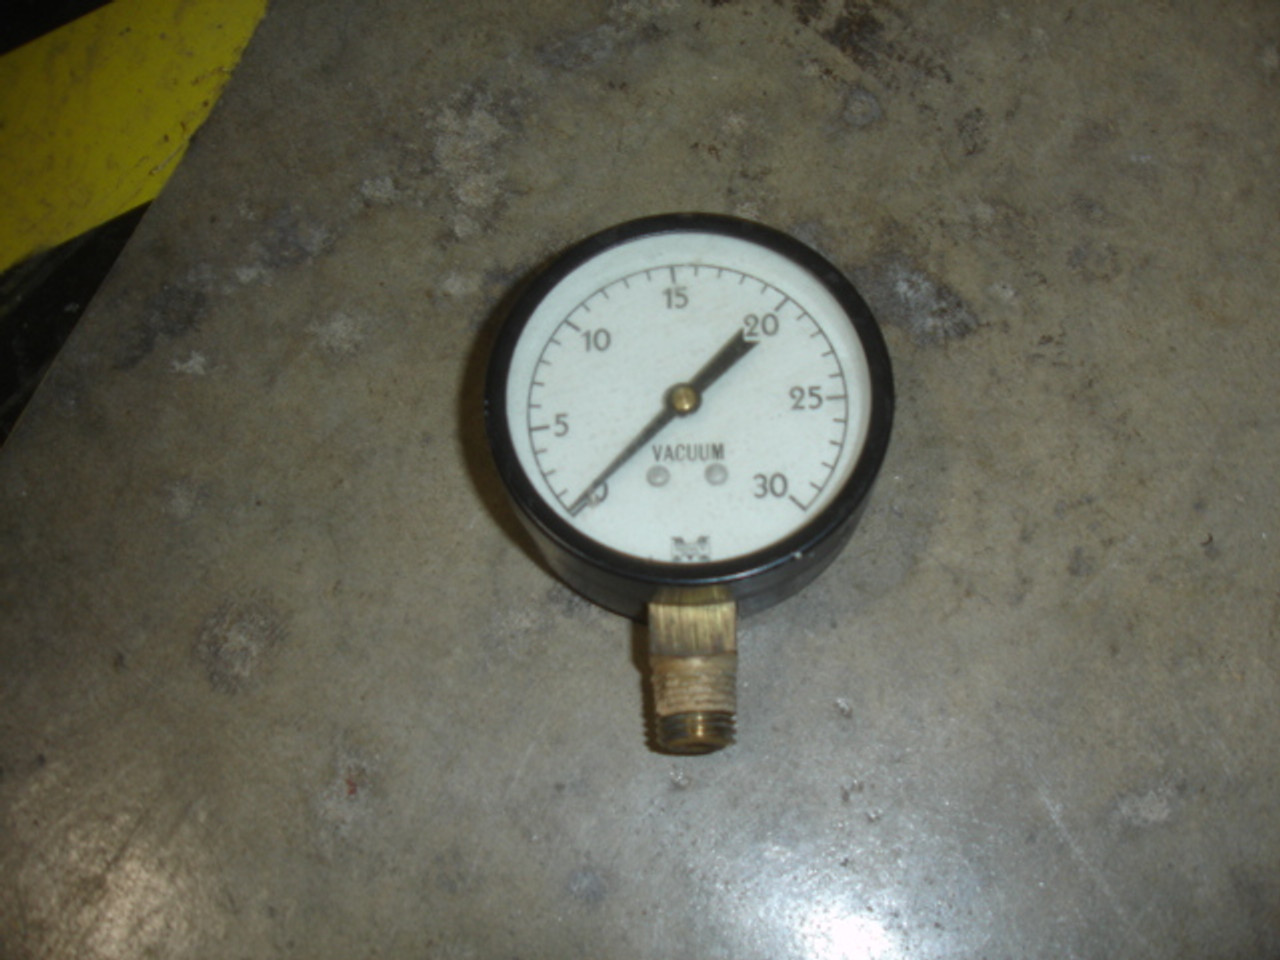 Marshalltown Mfg Gauge7 Vacuum Gauge-0-30 in Hg,1/4" MPT, 2 5/8" Dial